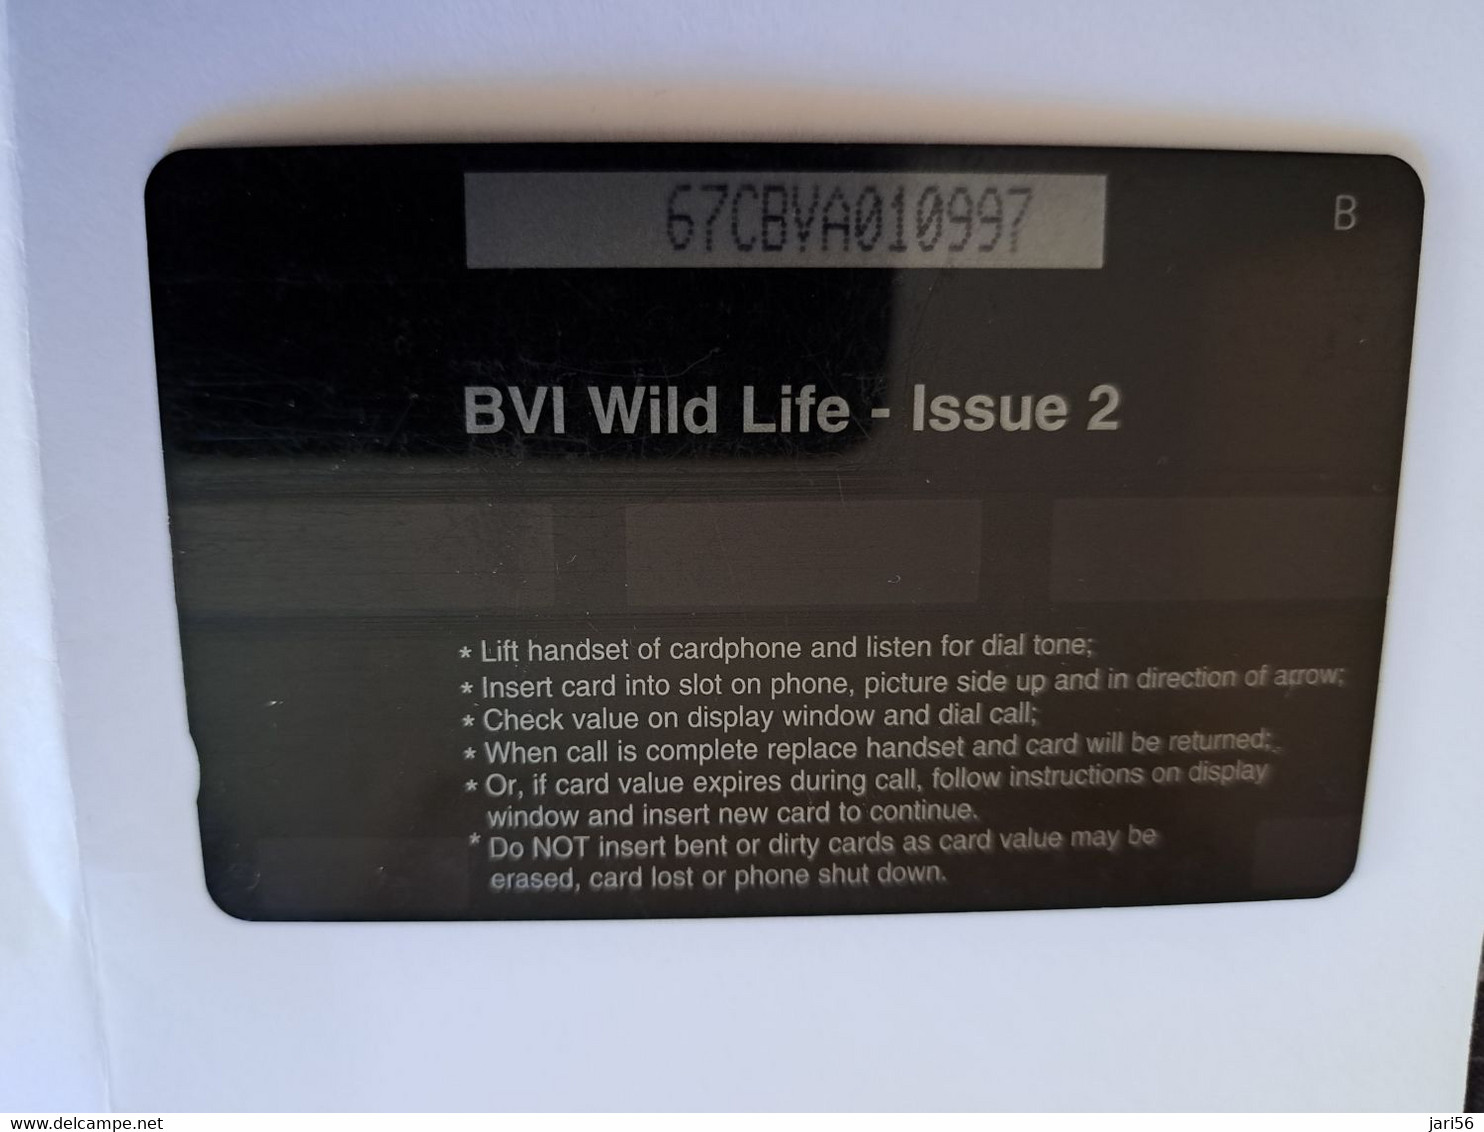 BRITSCH VIRGIN ISLANDS  US$ 5  BVI-67A   HUMMING BIRD    67CBVA     Fine Used Card   ** 11849** - Maagdeneilanden